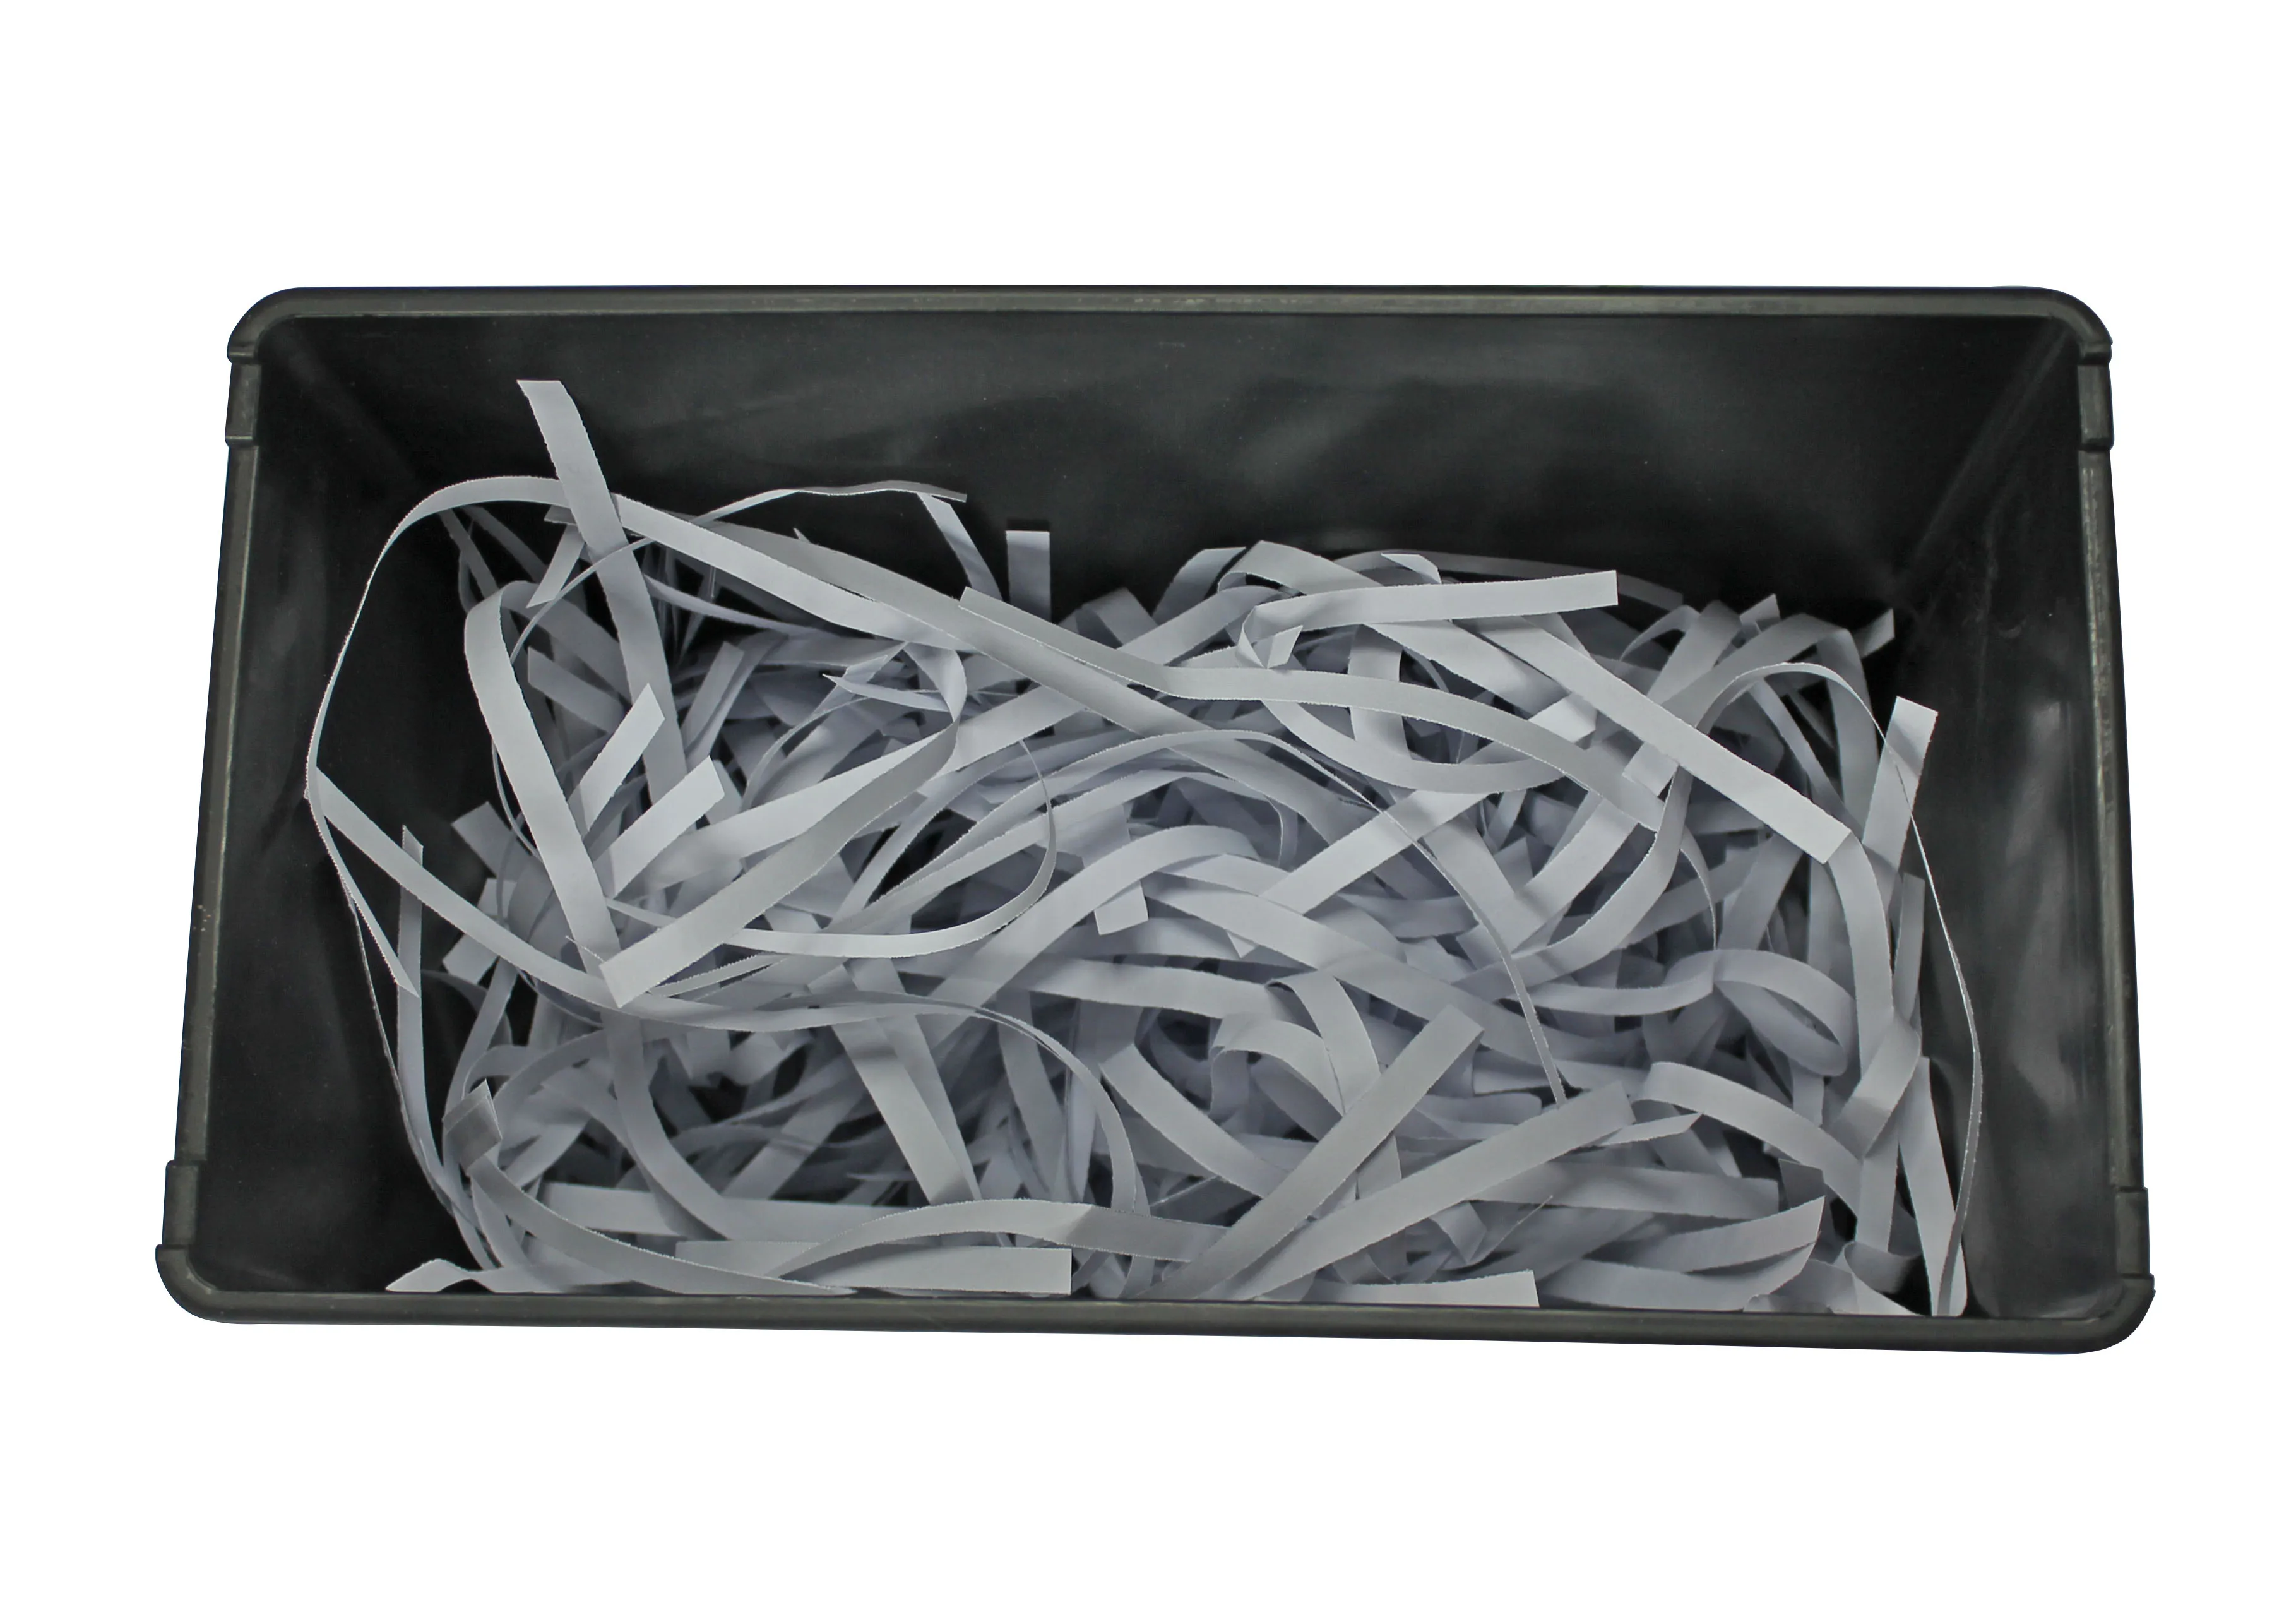 papper shredder图片